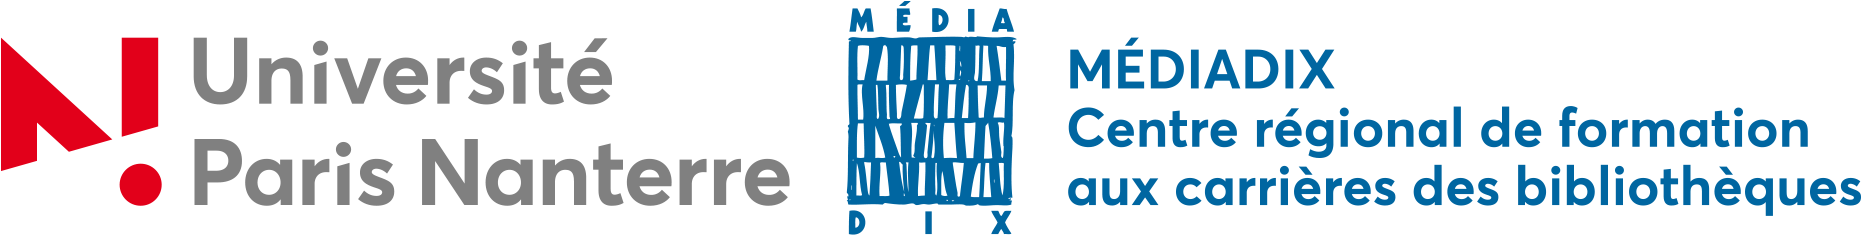 logo-Médiadix